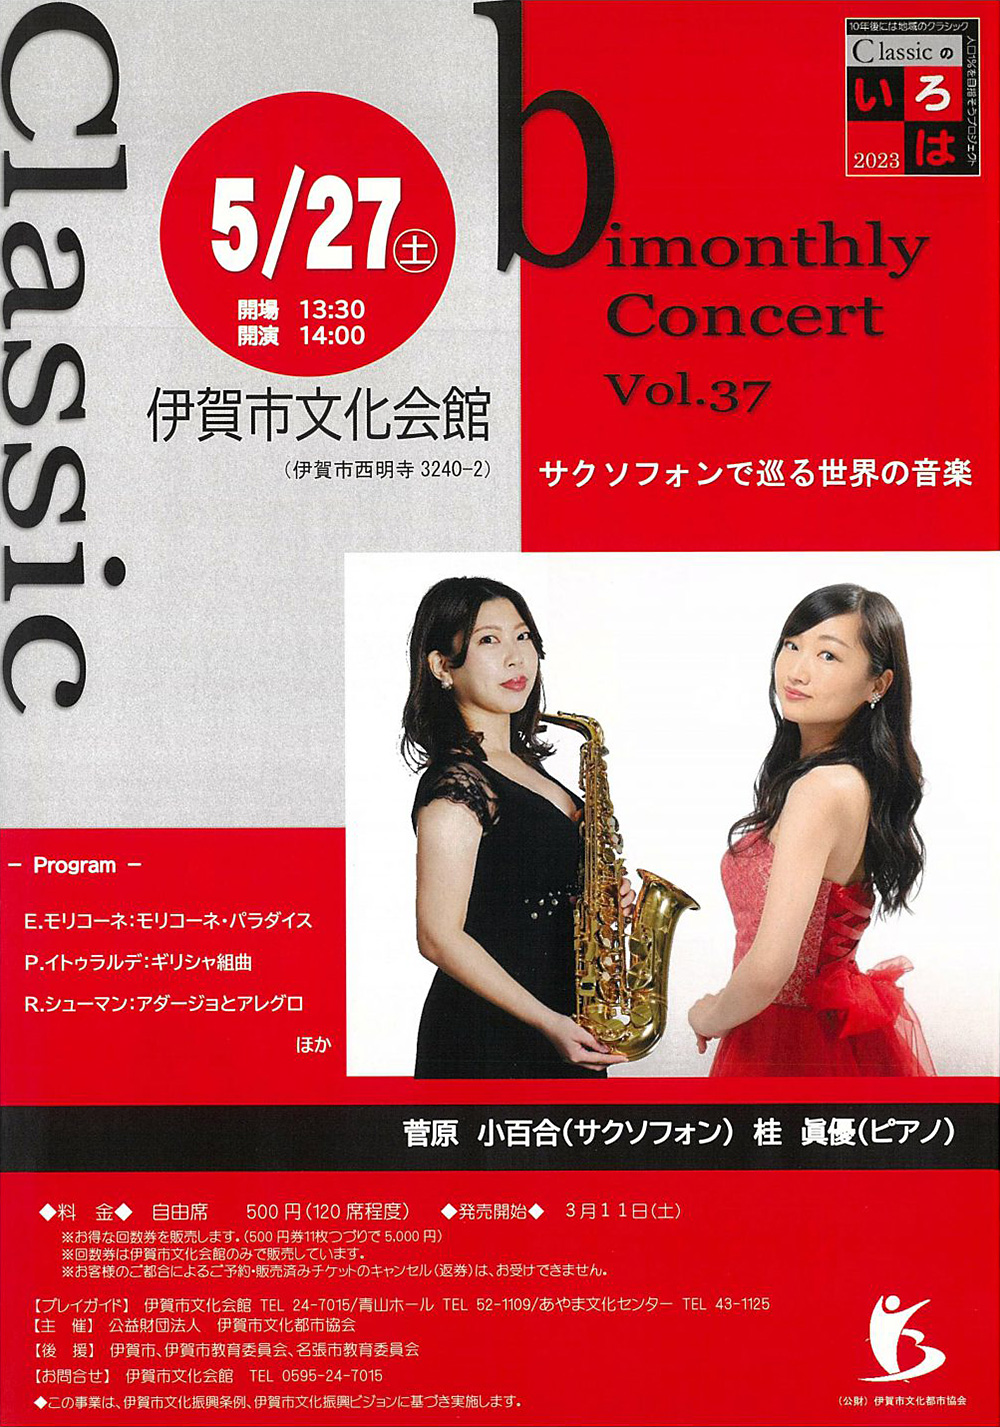 bimonthly Concert Vol.37 サクソフォンで巡る世界の音楽